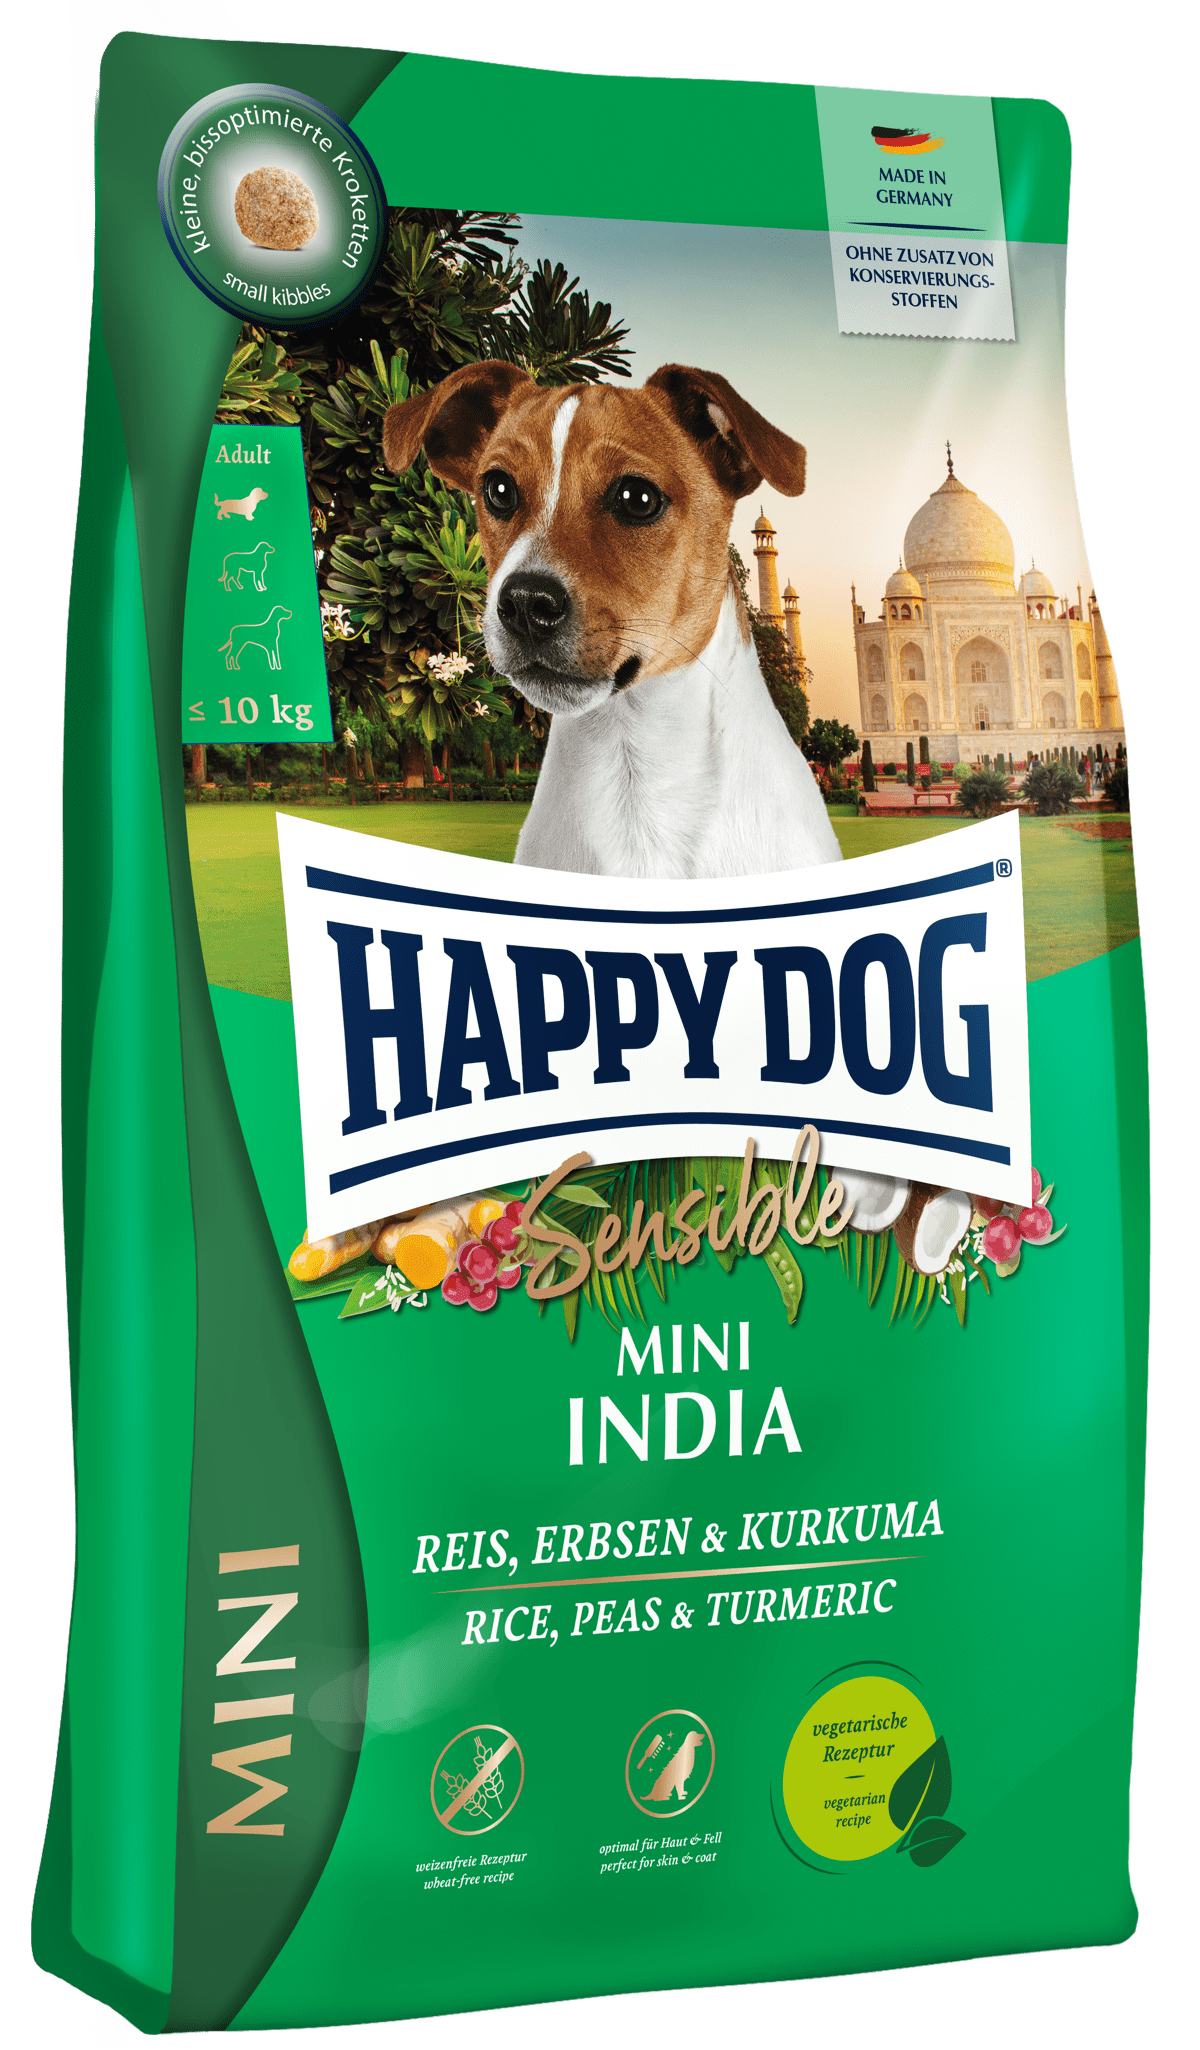 食物に敏感な愛犬に、ドイツ獣医師推奨ベジタリアンレシピのミニ インディア製品画像